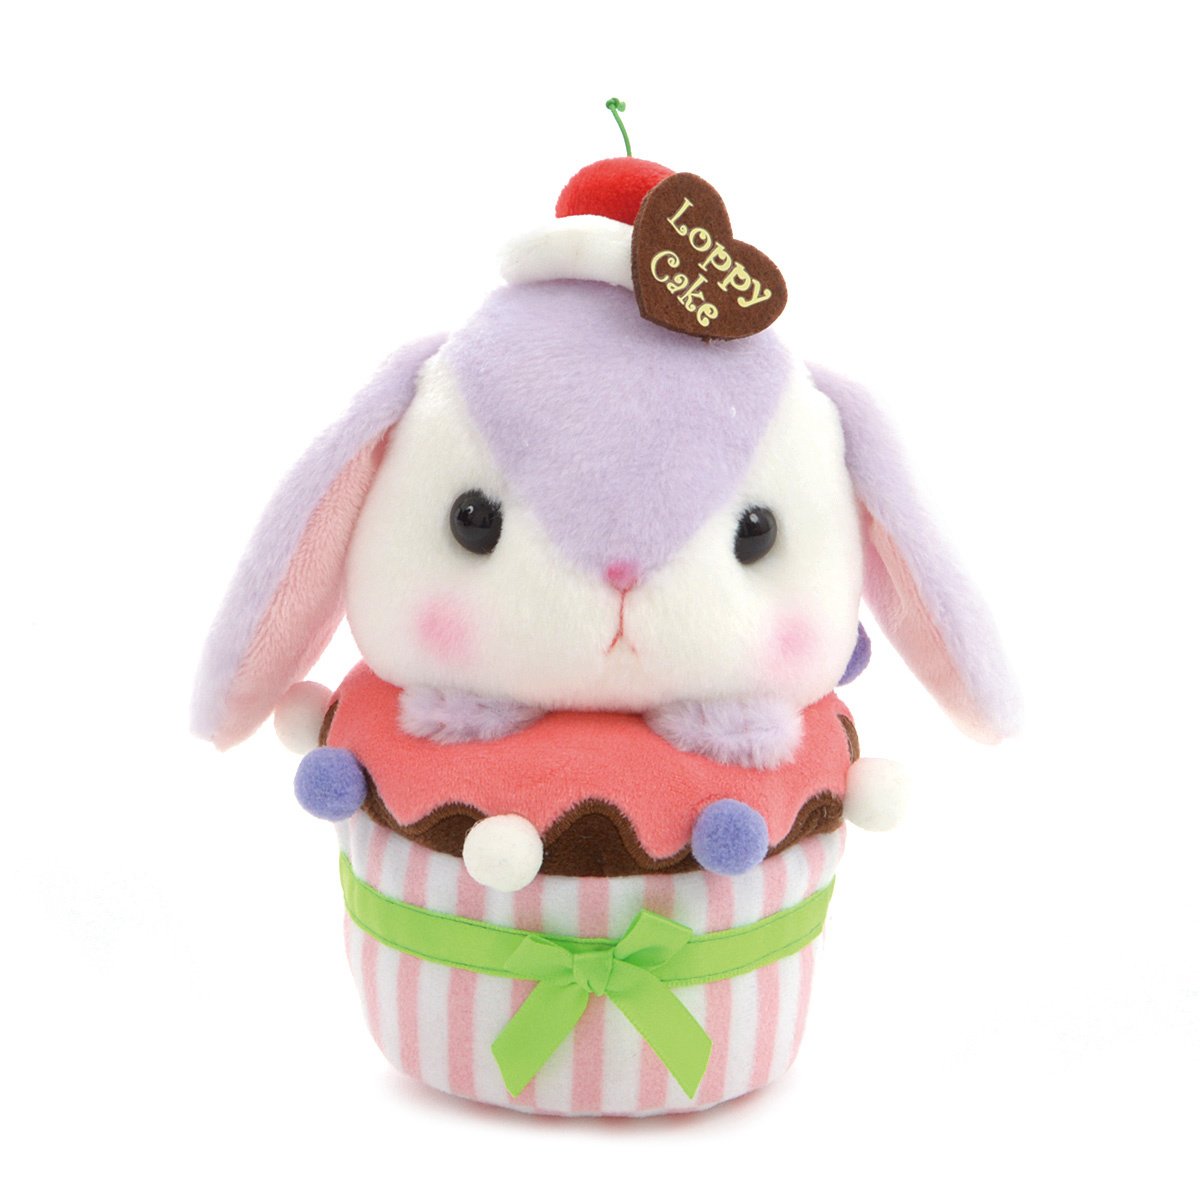 Plush Bunny, Amuse, Pote Usa Loppy, Sumiere-chan, Purple, 6 Inches